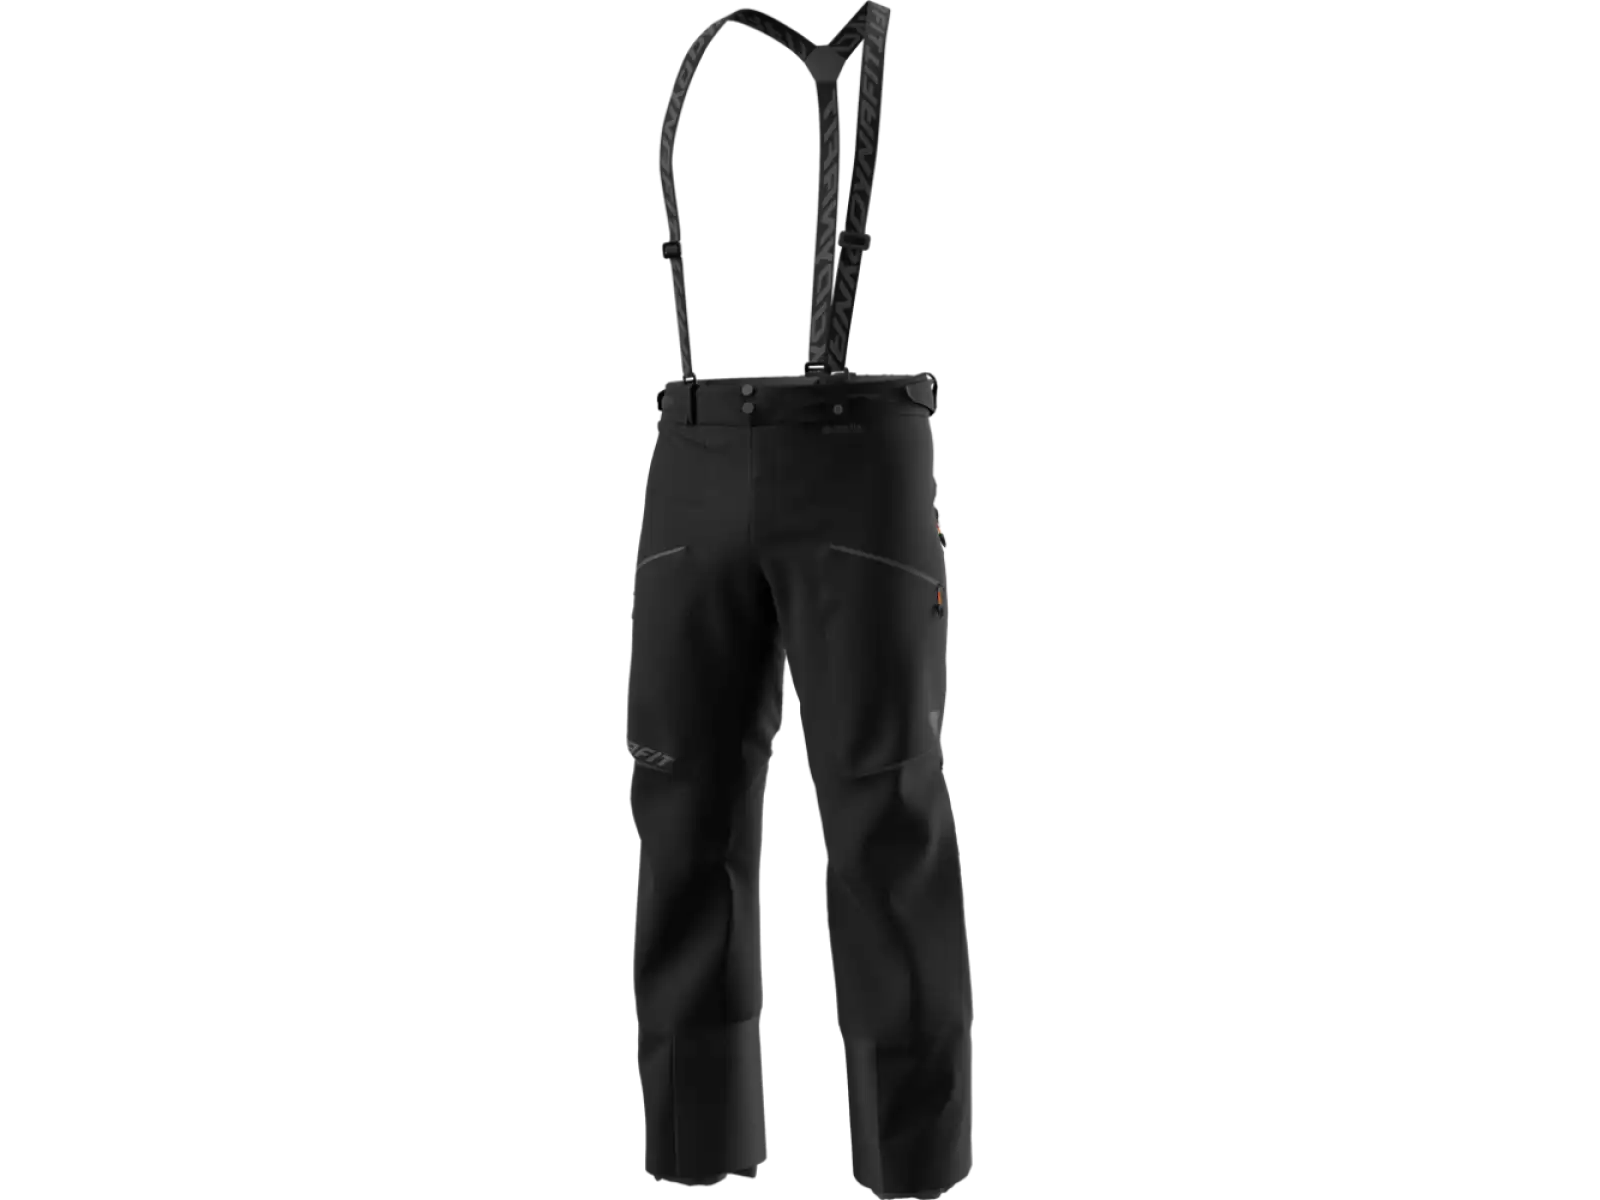 Dynafit Free Infinium Hybrid pánské kalhoty s laclem Black out